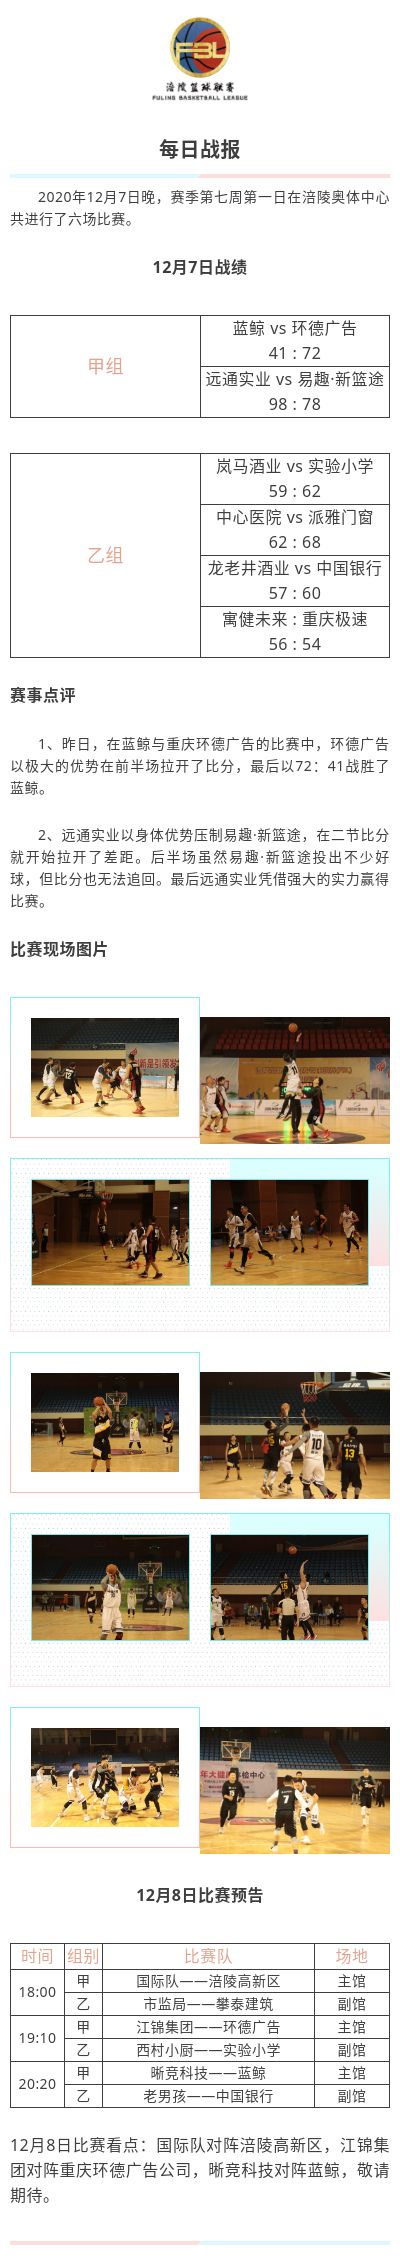 涪陵高新区·涪陵篮球联赛（FBL）2020赛季每日战报12.7